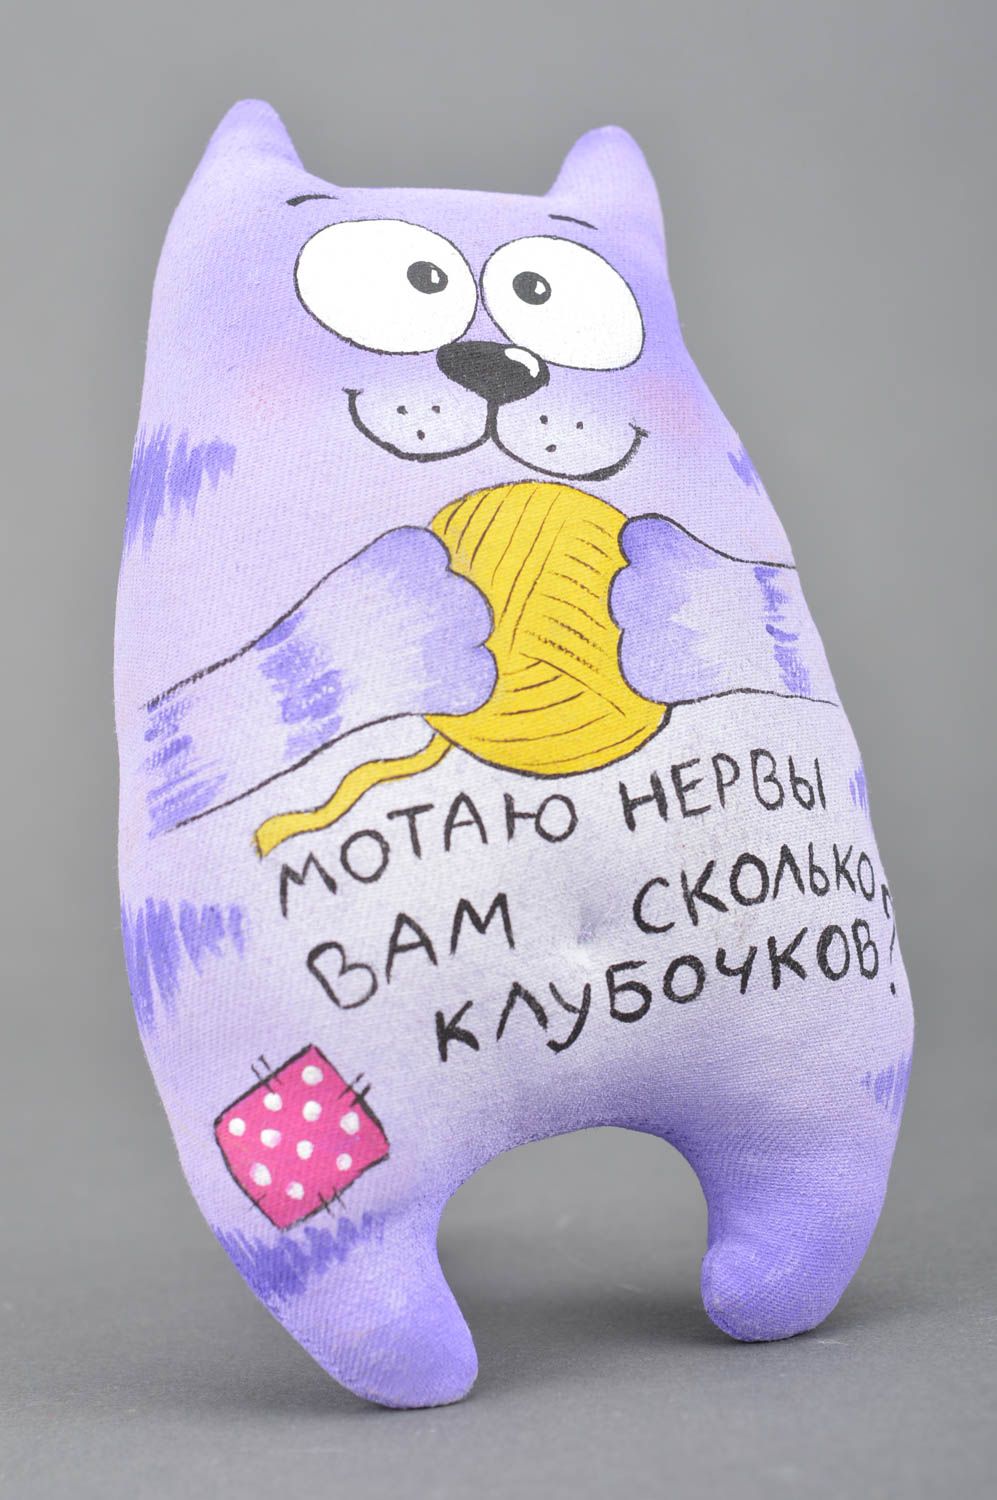 Мягкая игрушка ручной работы котик из хлопка с надписью декоративная красивая фото 2